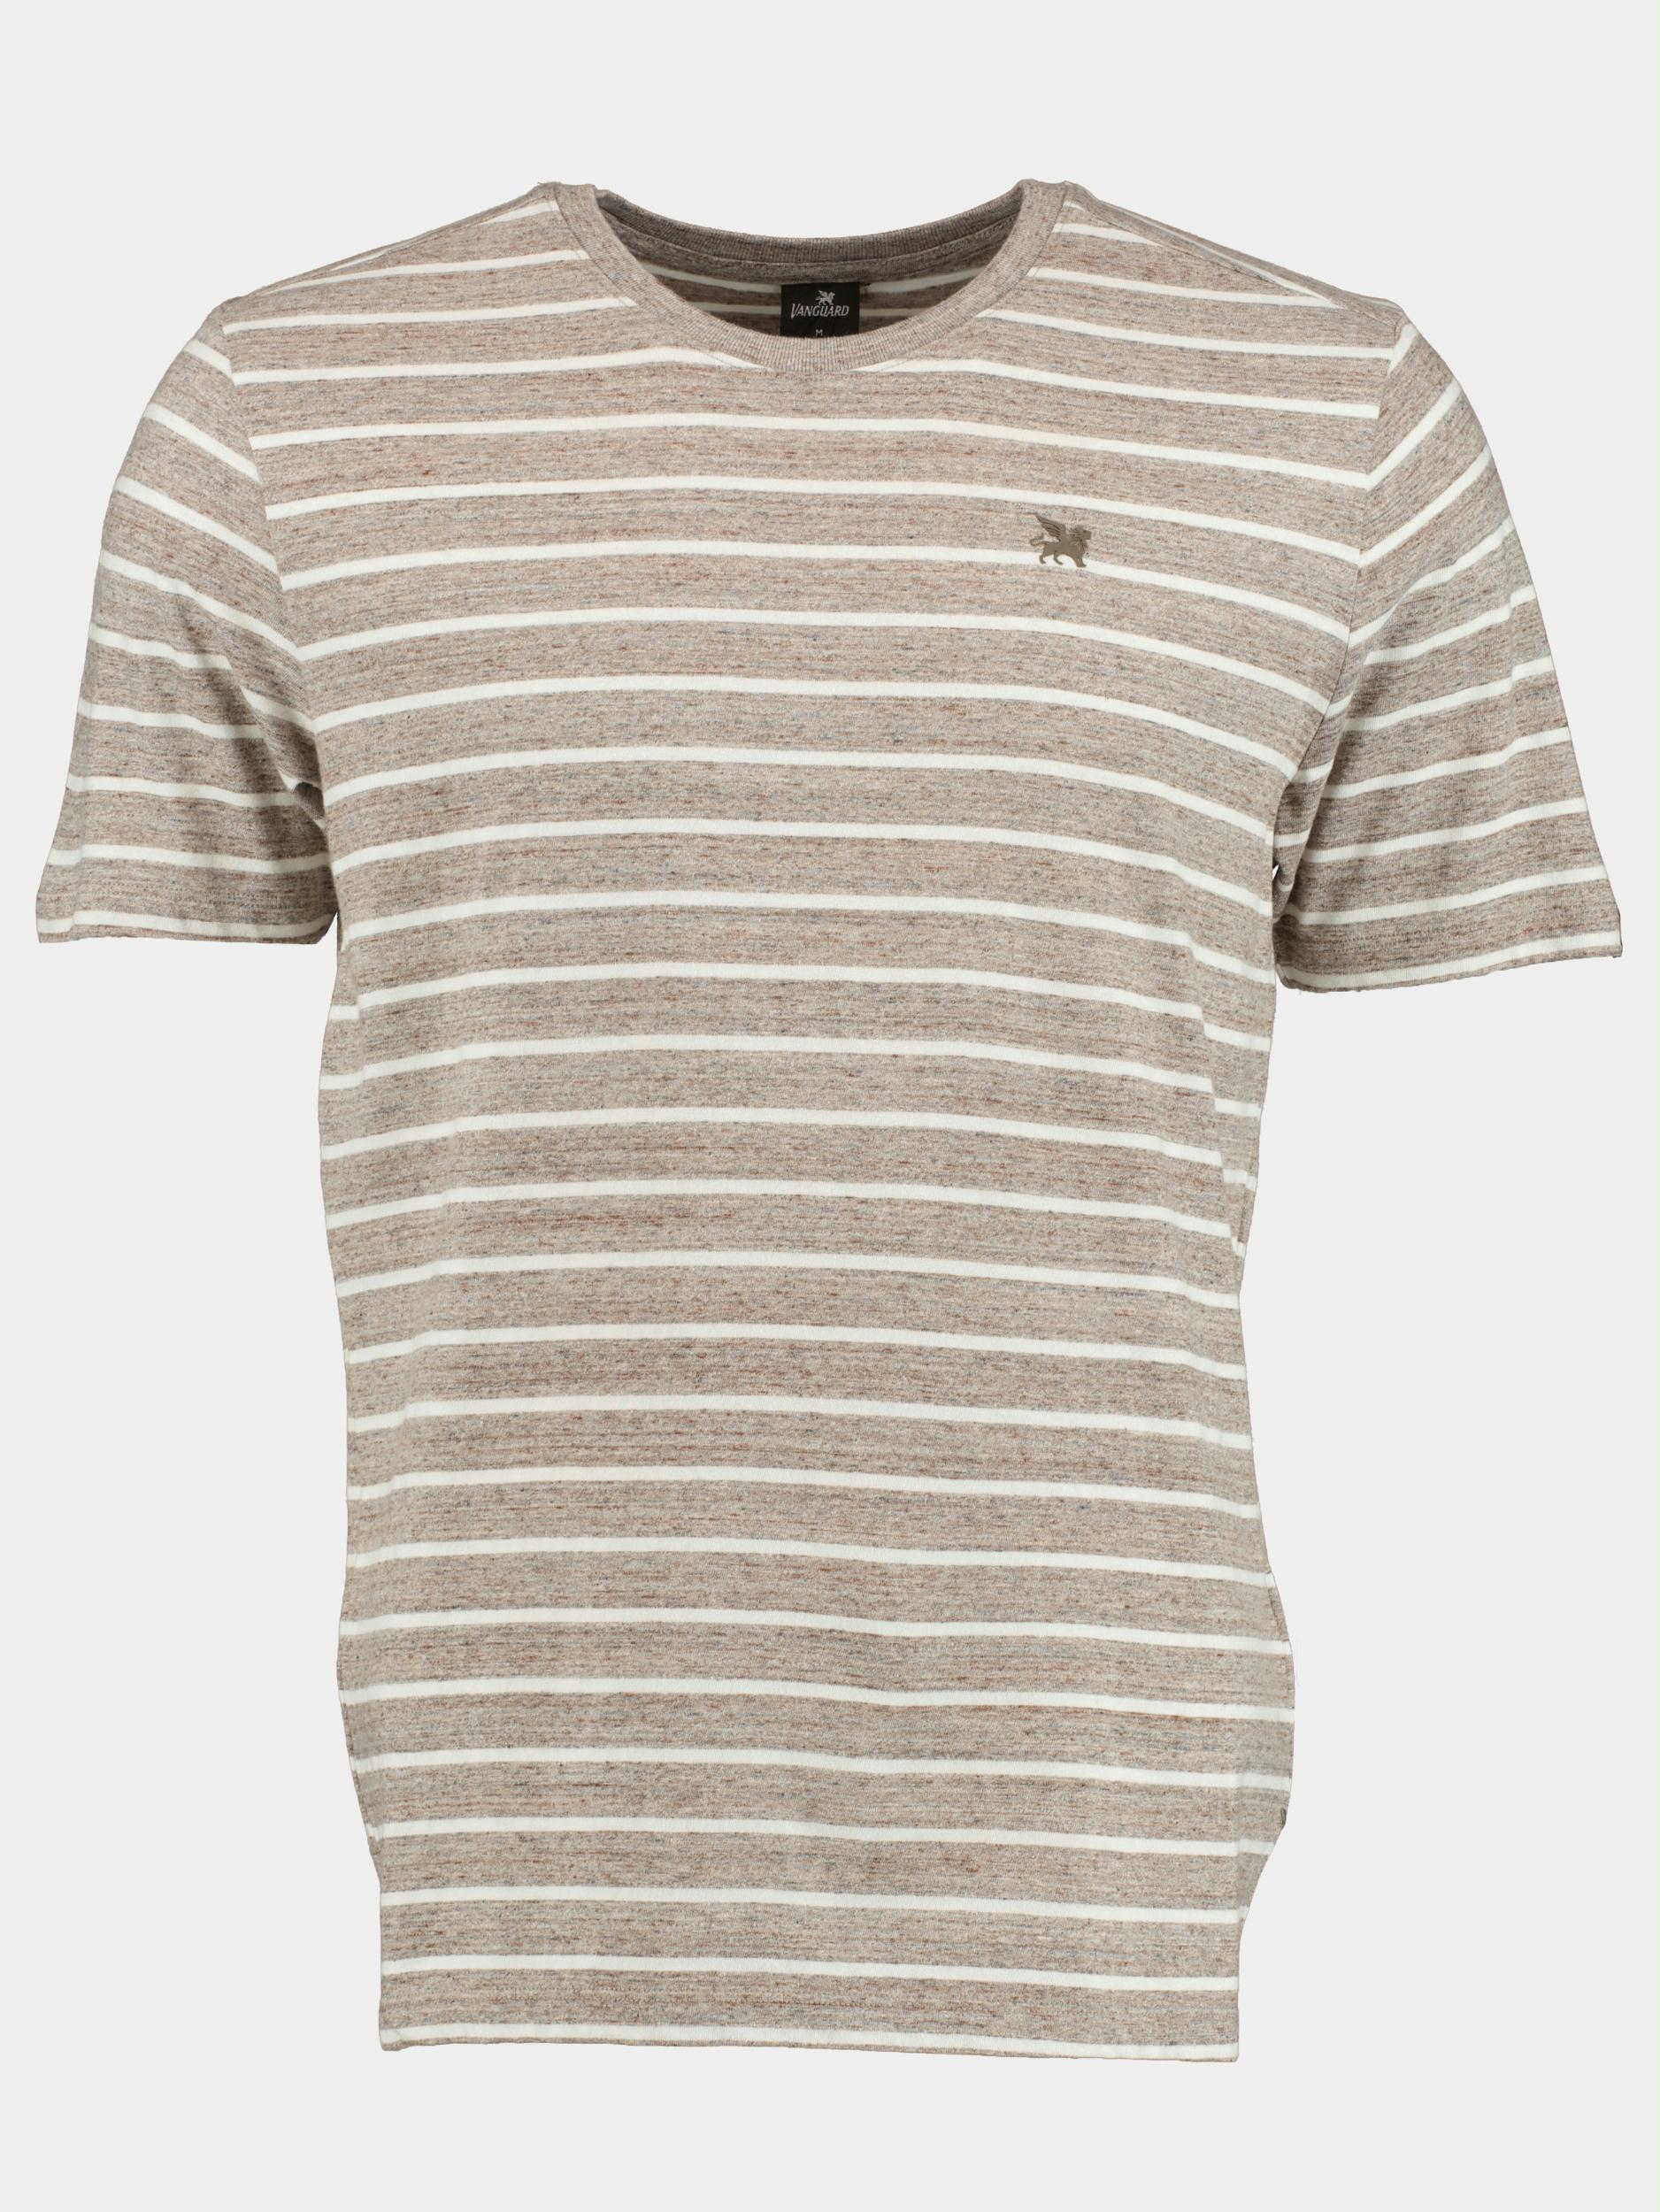 Vanguard T-shirt korte mouw Bruin Short sleeve r-neck melange j VTSS2303570/8031